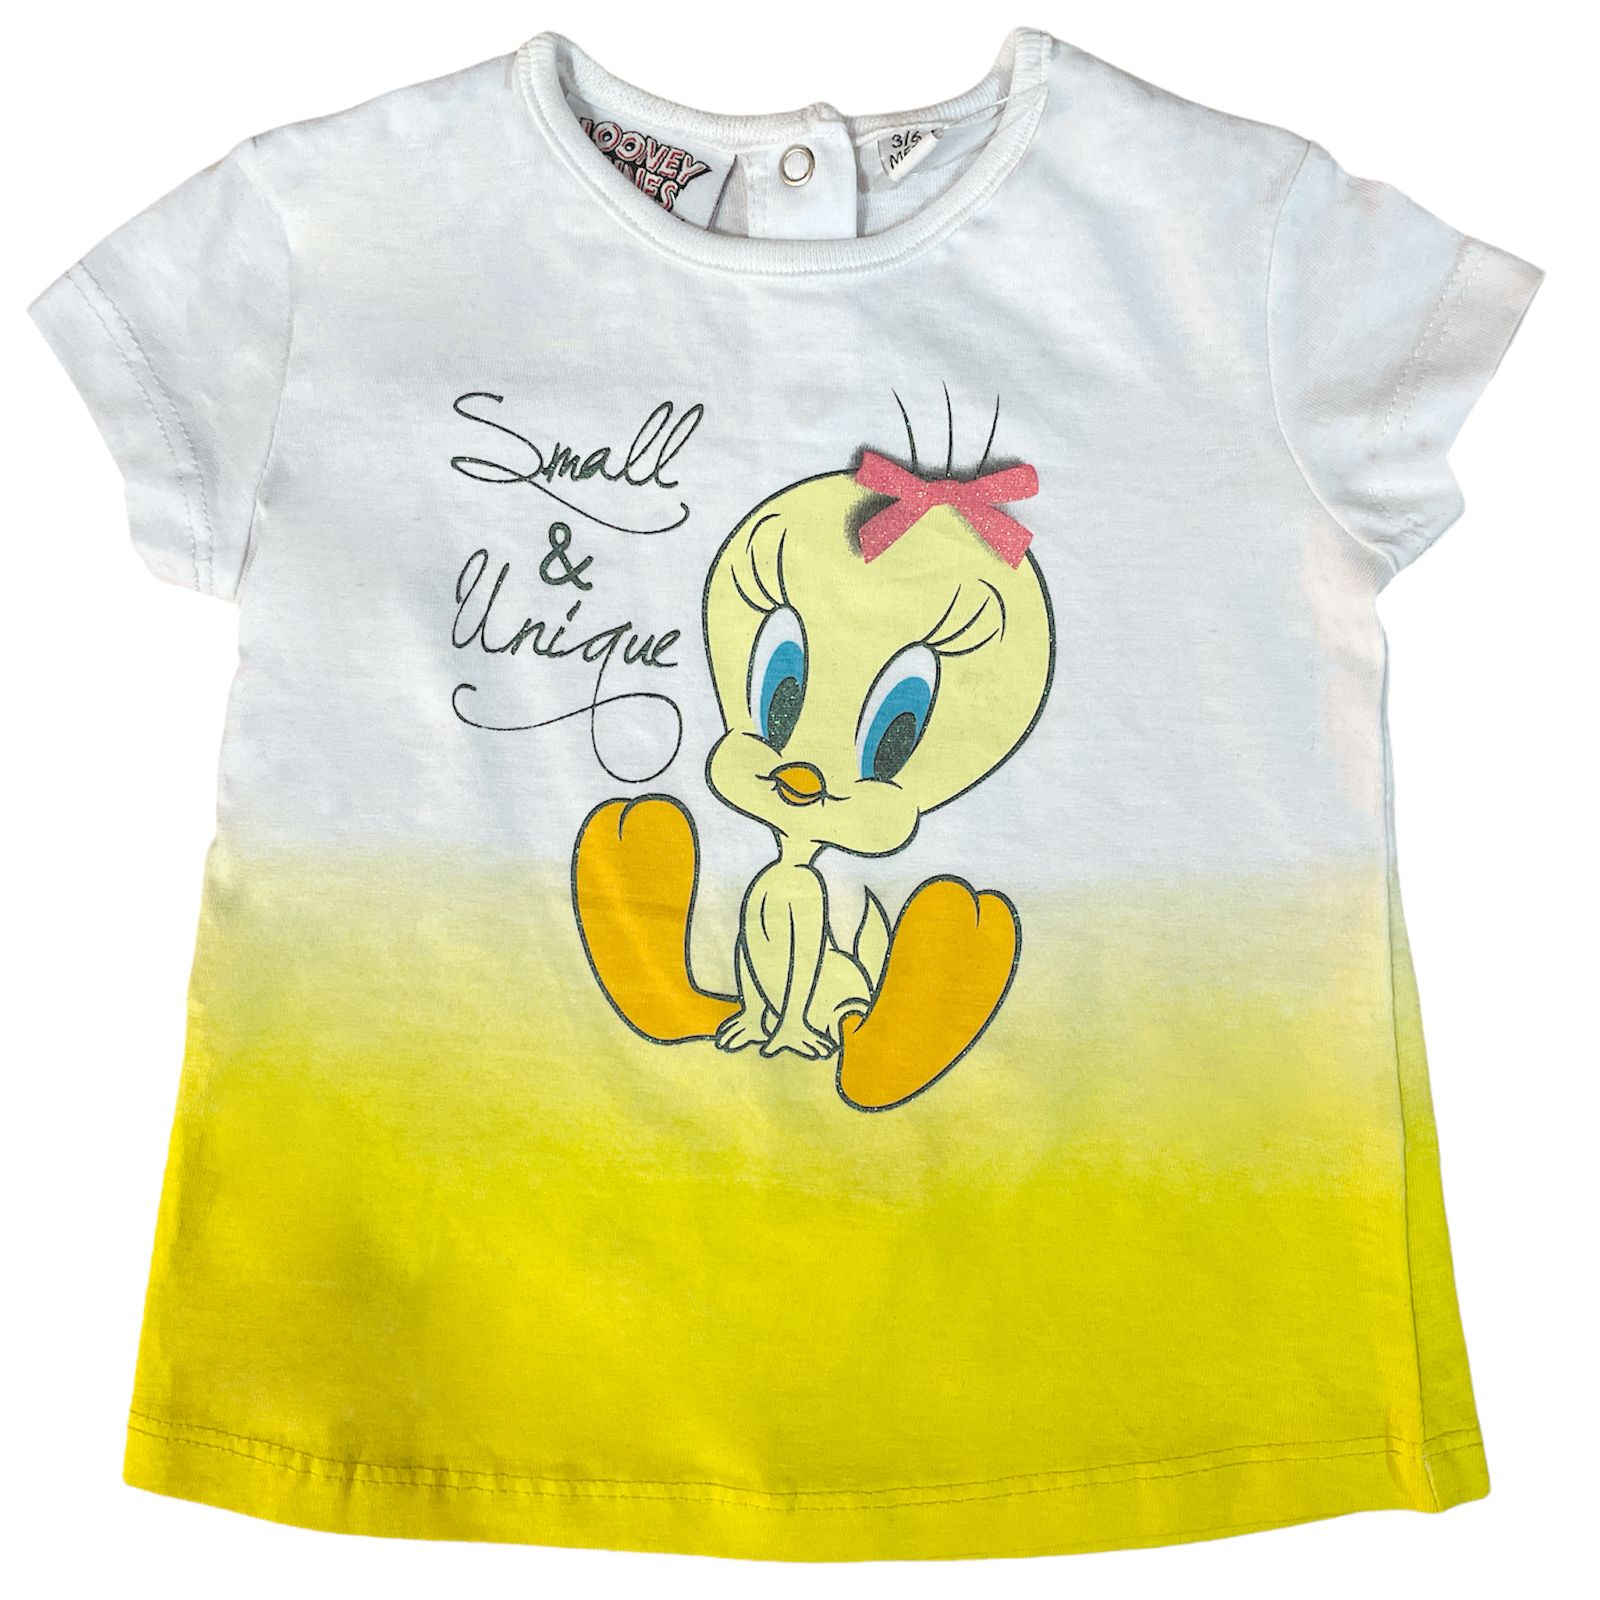 تی شرت آستین کوتاه نوزادی لونی تونز مدل توییتی 63527 -  - 1